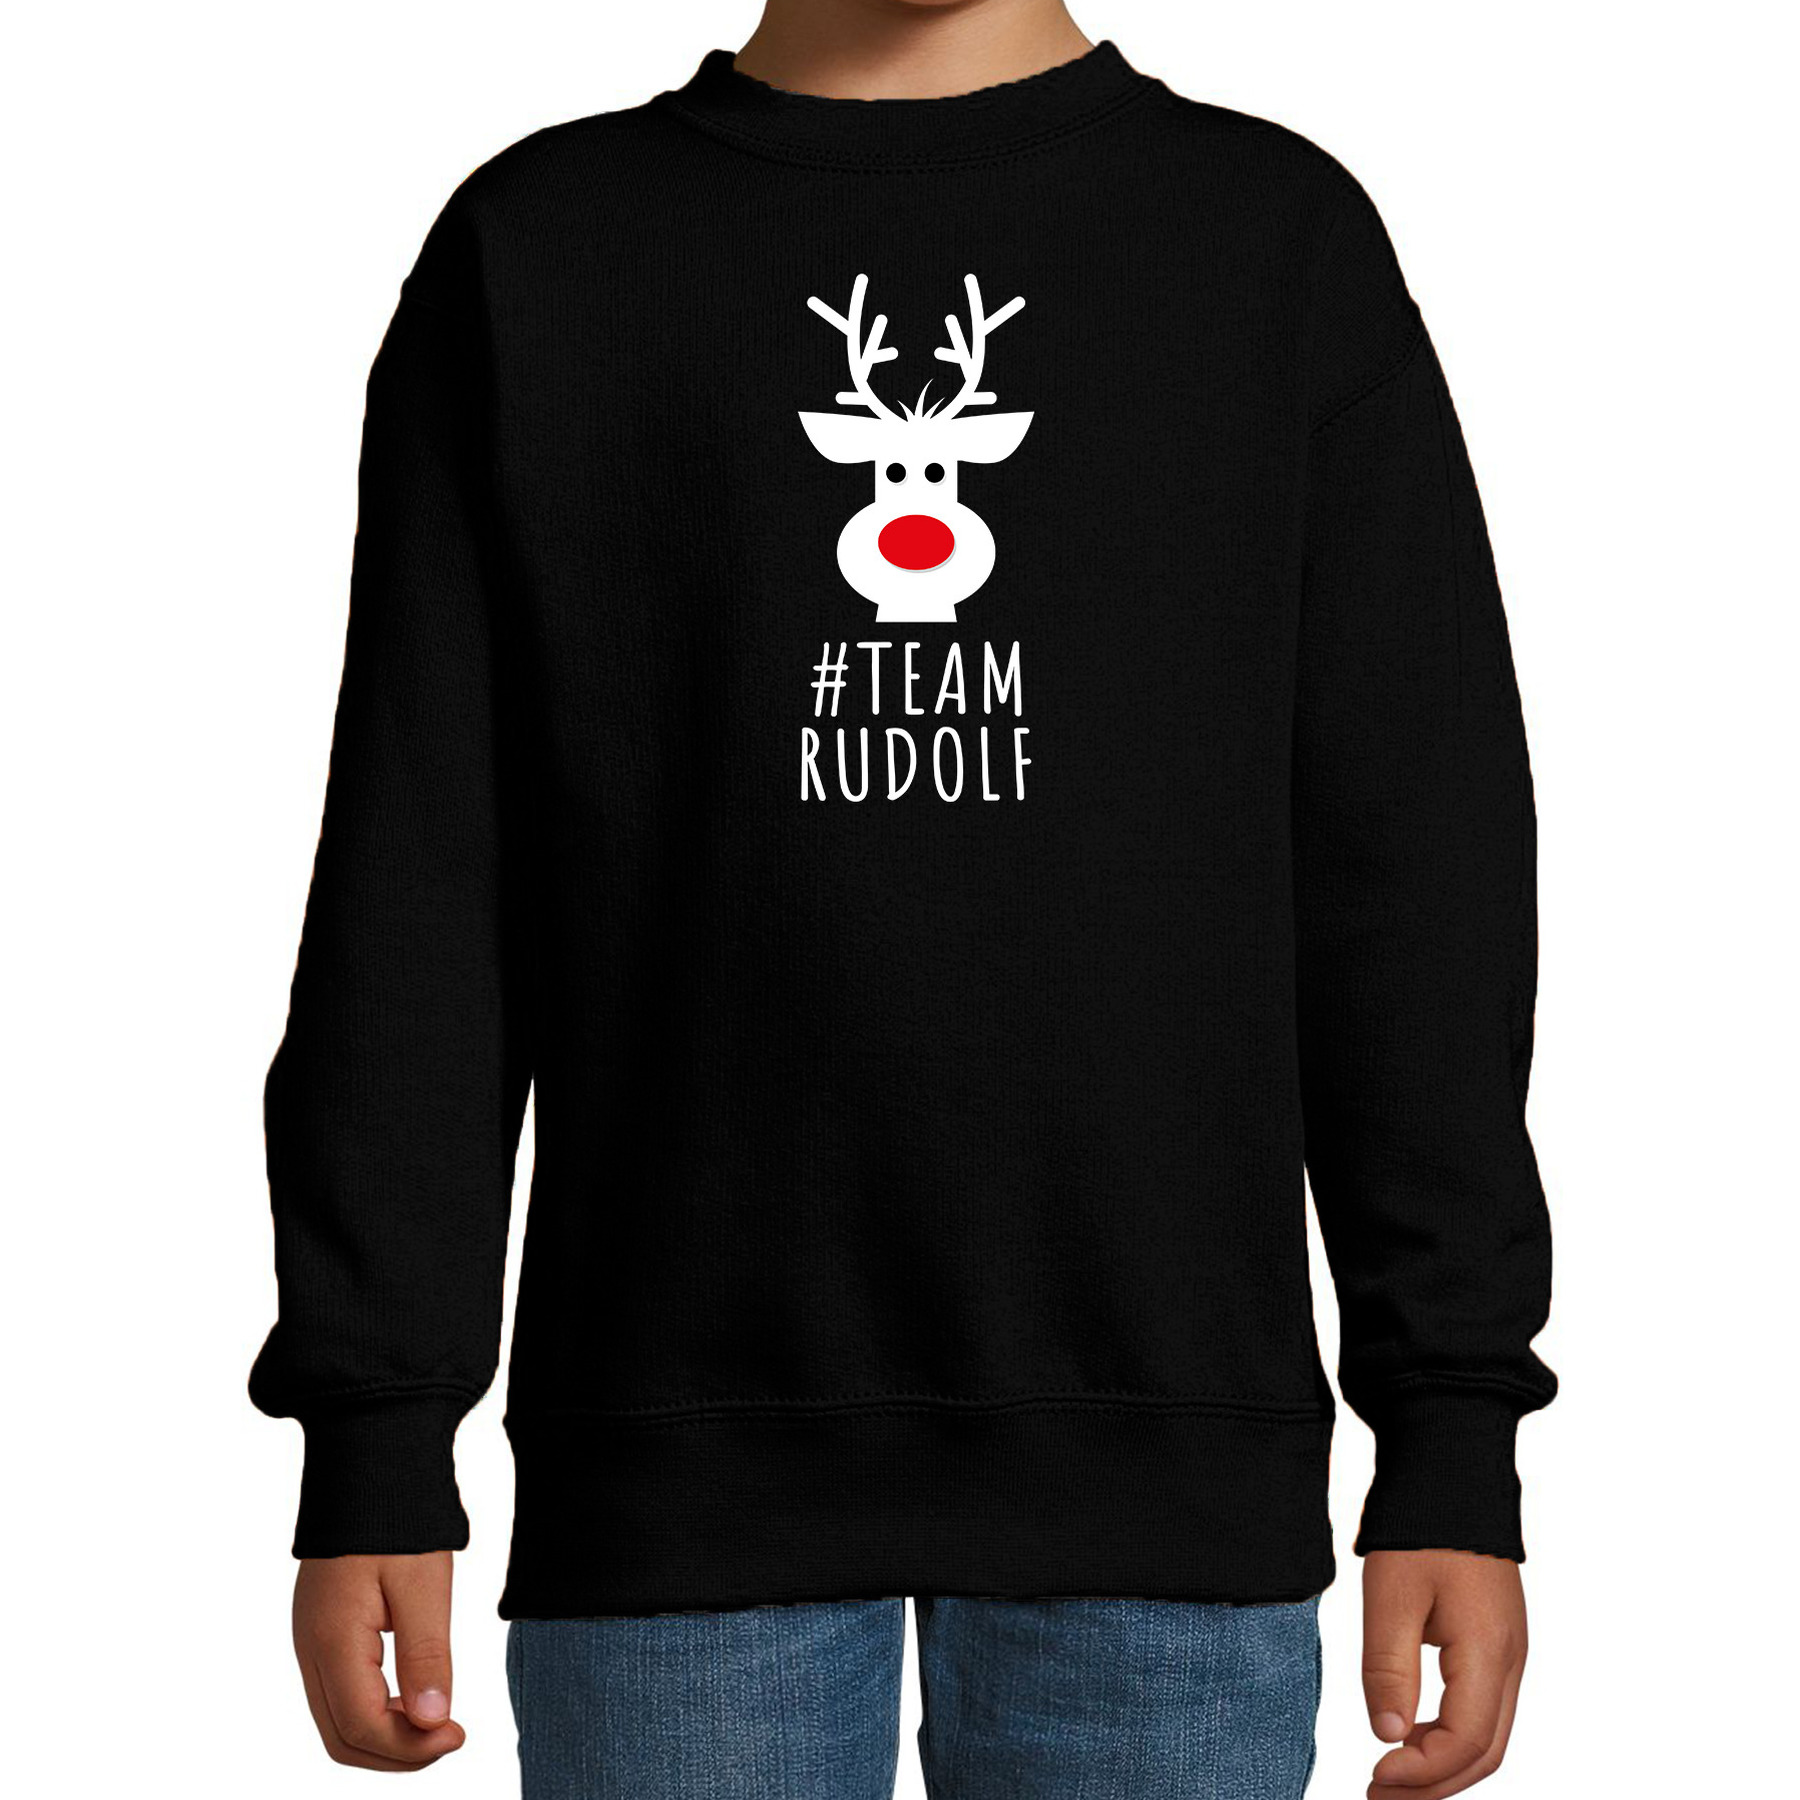 Kersttrui-sweater voor kinderen team Rudolf zwart